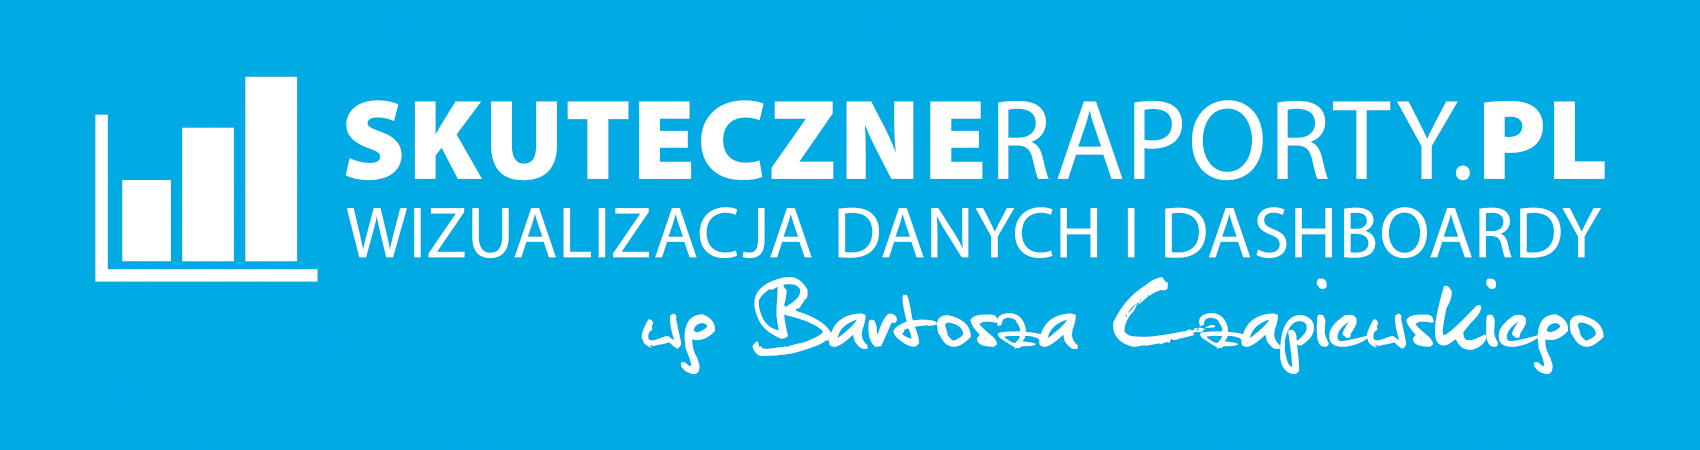 Logo SkuteczneRaporty.pl Bartosz Czapiewski